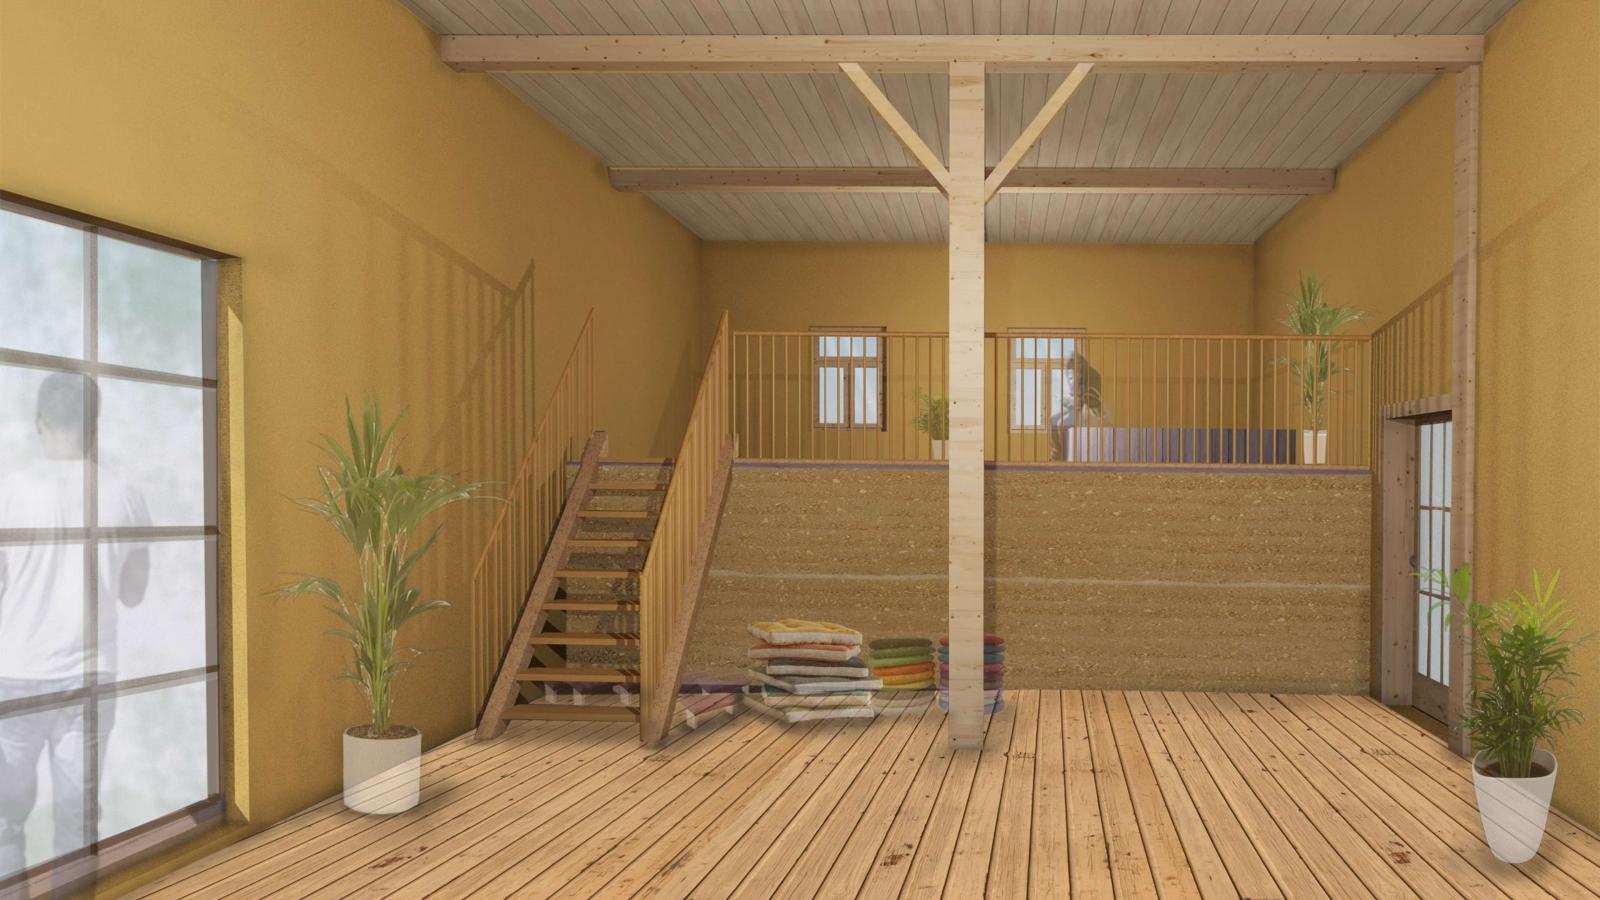 Virtuelle Ansicht des umgestalteten Dachbodens der Scheune als Entwurf